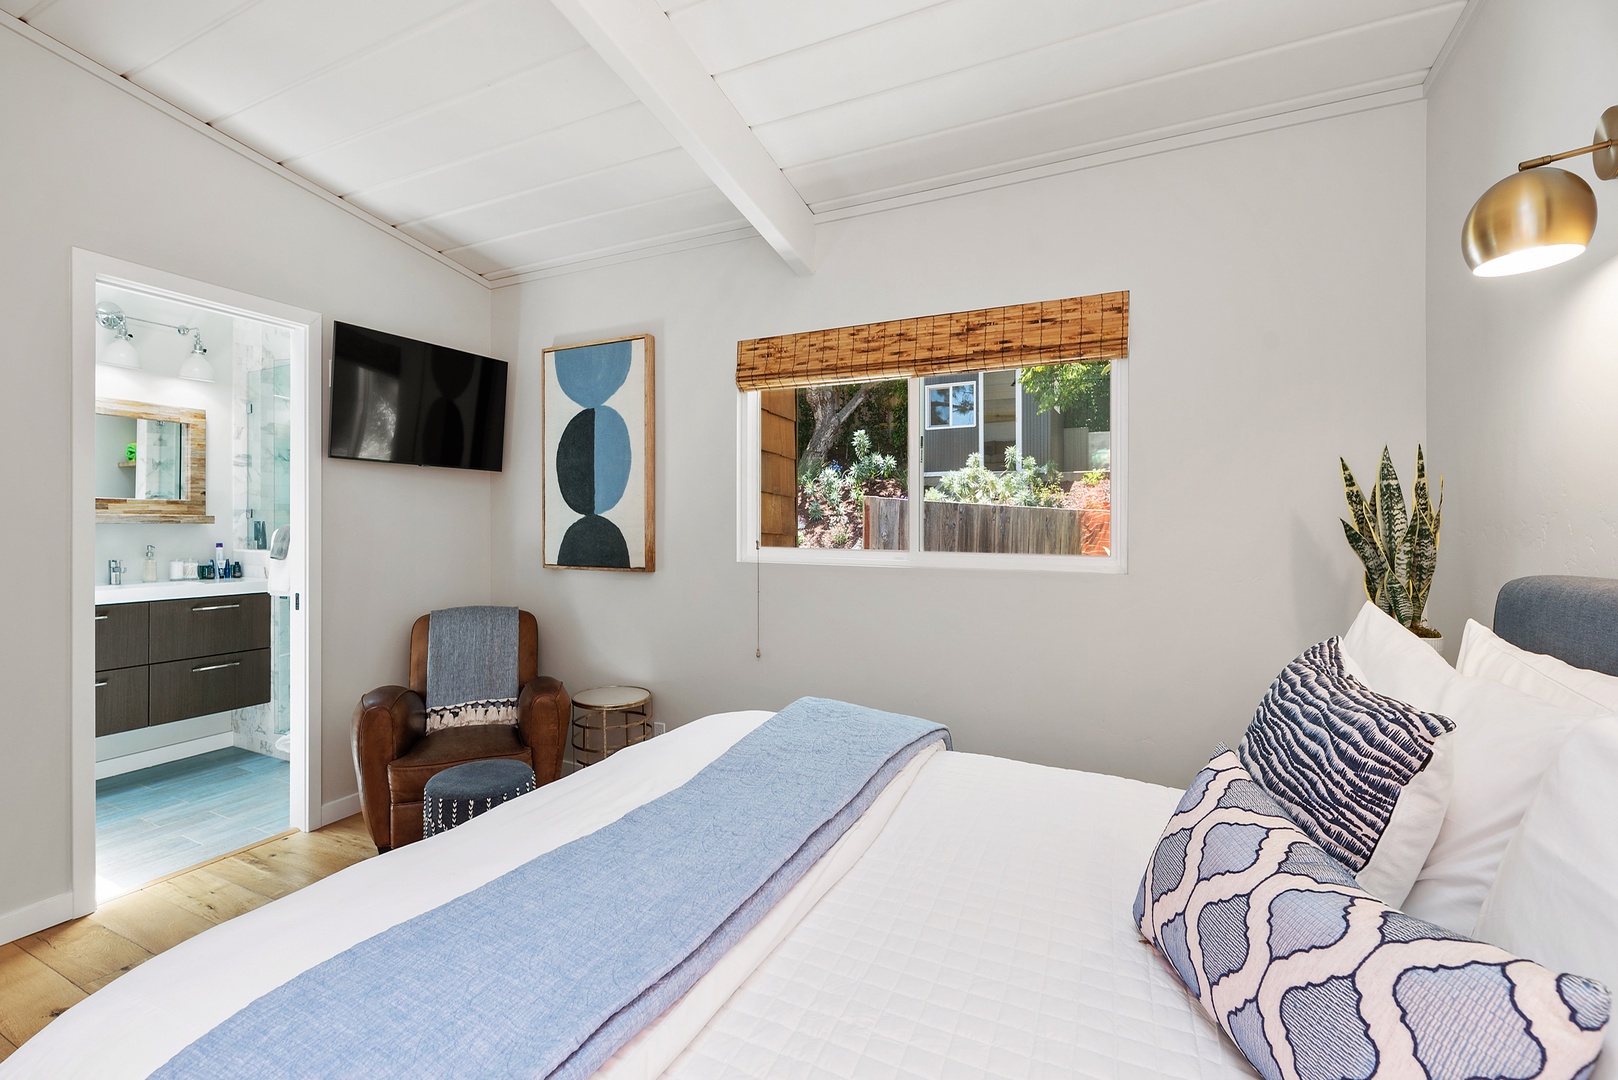 Del Mar Vacation Rentals, Del Mar Zuni Delight - Primary Bedroom with King size bed.